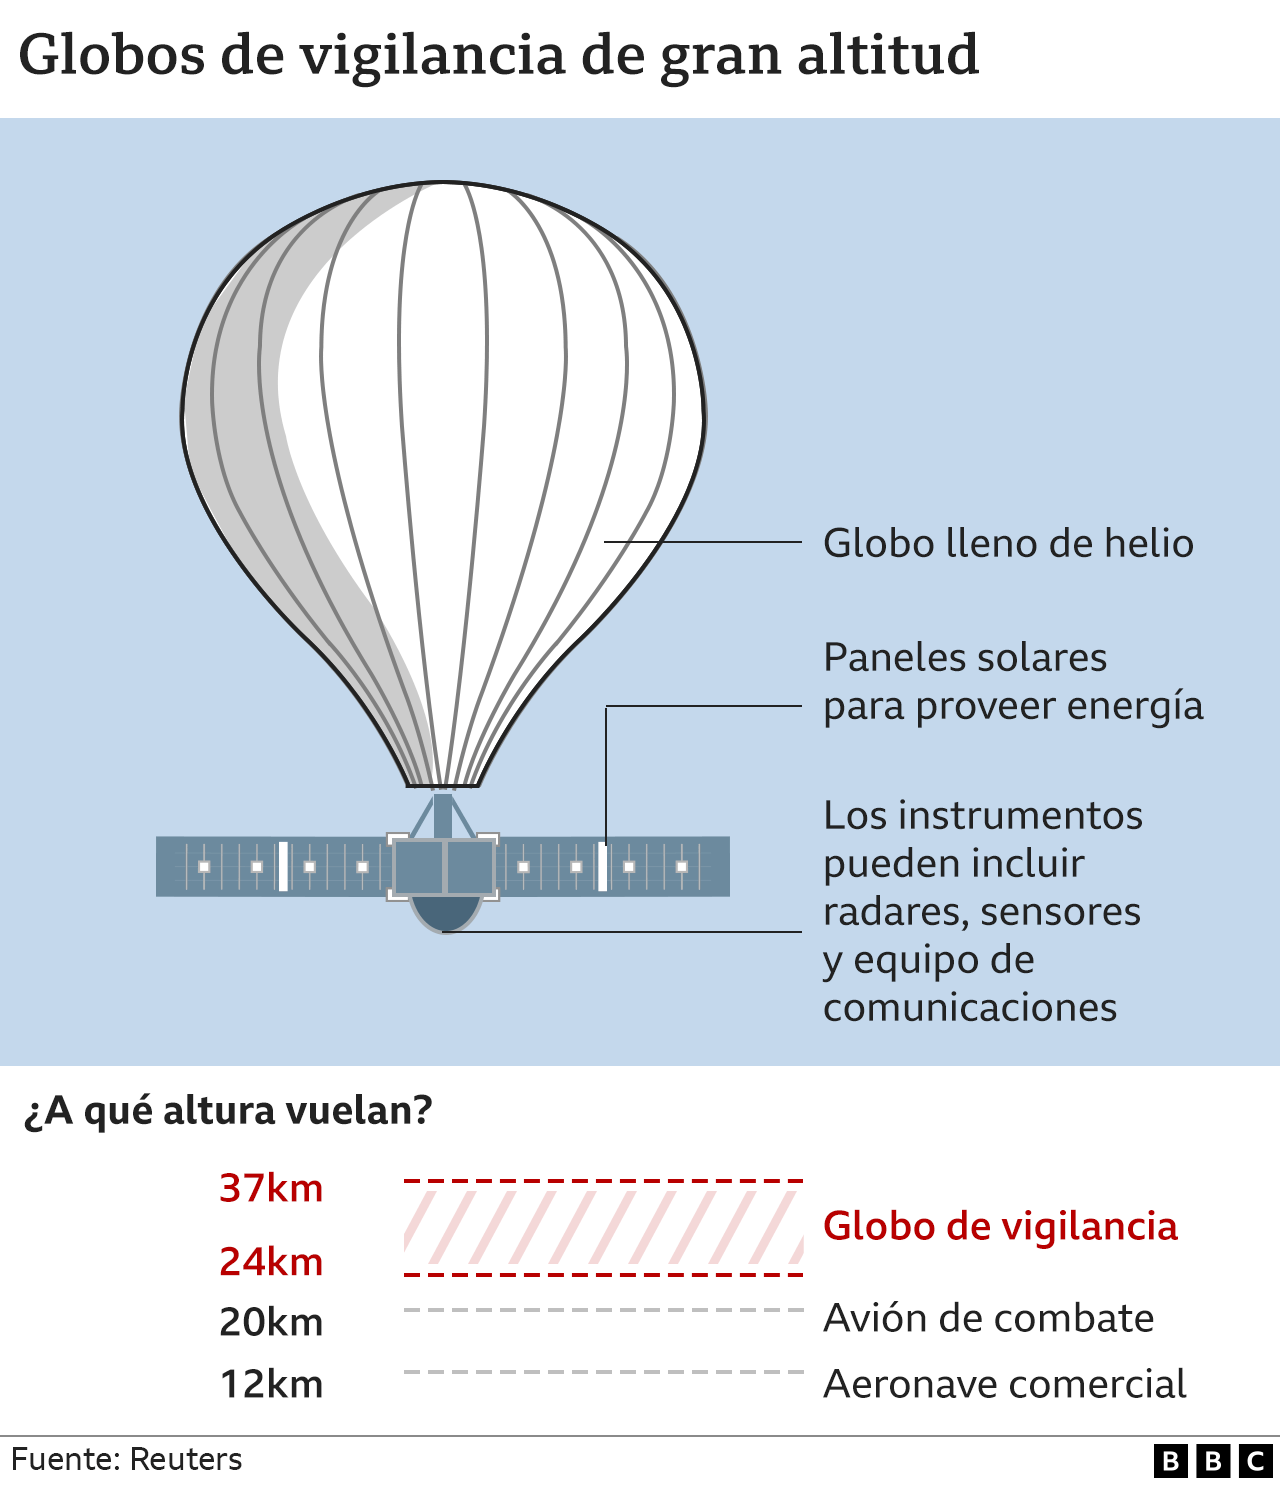 Gráfico sobre los globos de vigilancia de gran altitud.